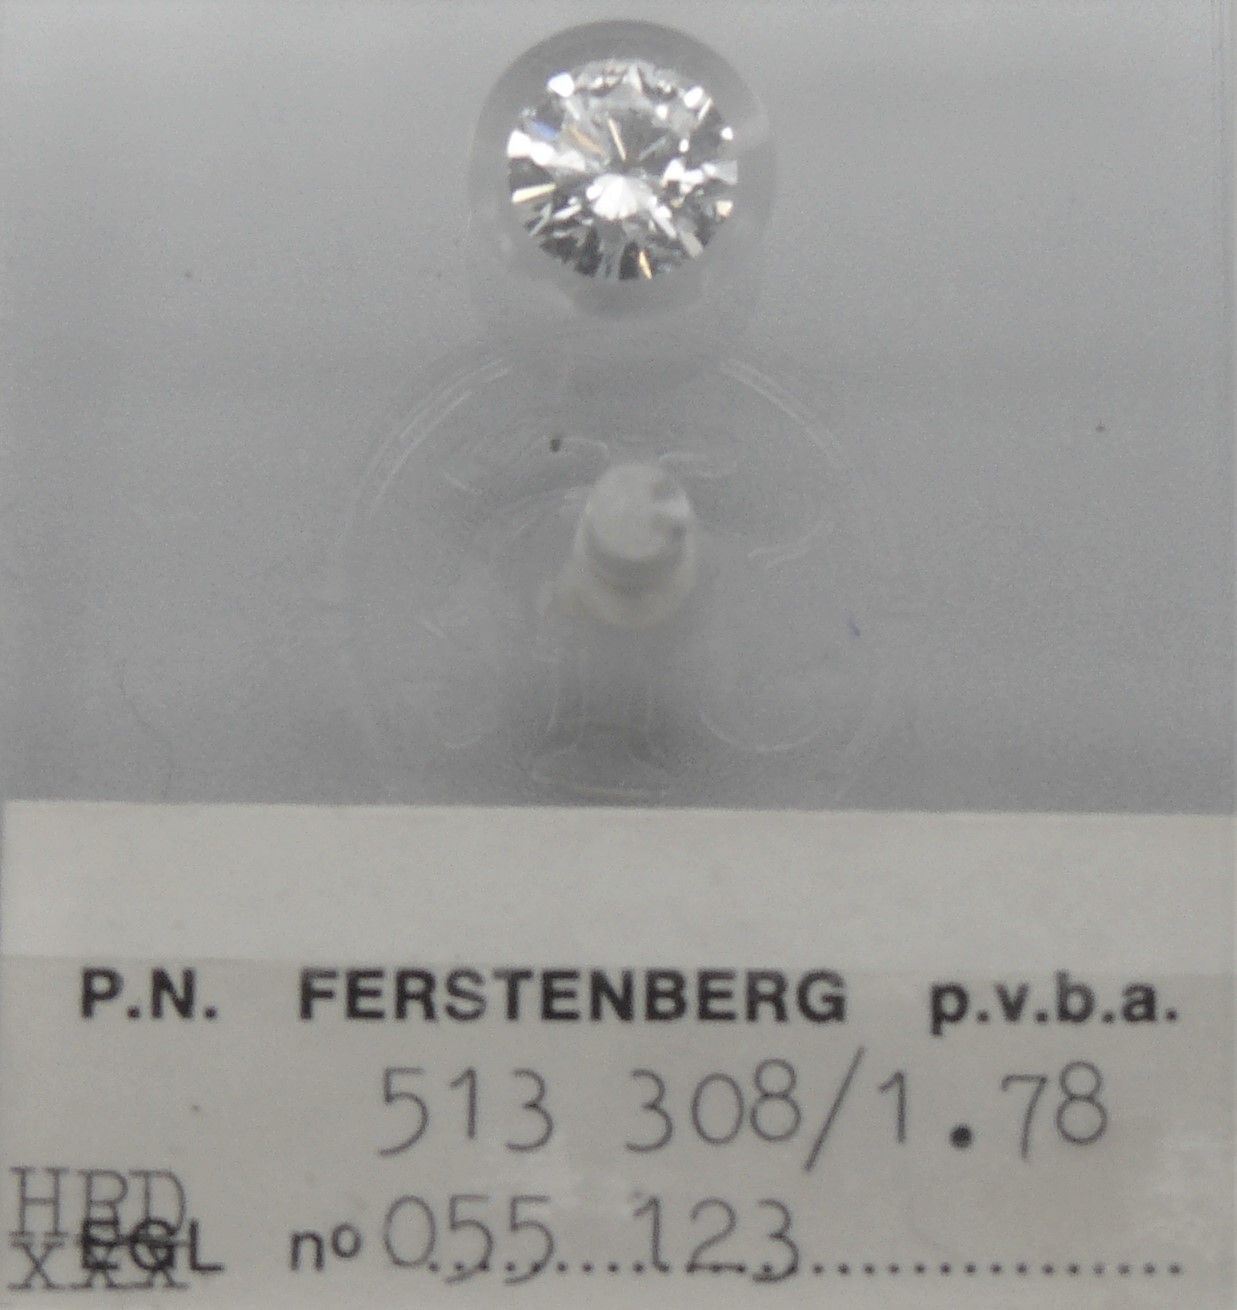 FERSTENBERG ein Diamant Nr. 513 308, versiegelt: Gewicht 1,78 Karat, runder Bril&hellip;